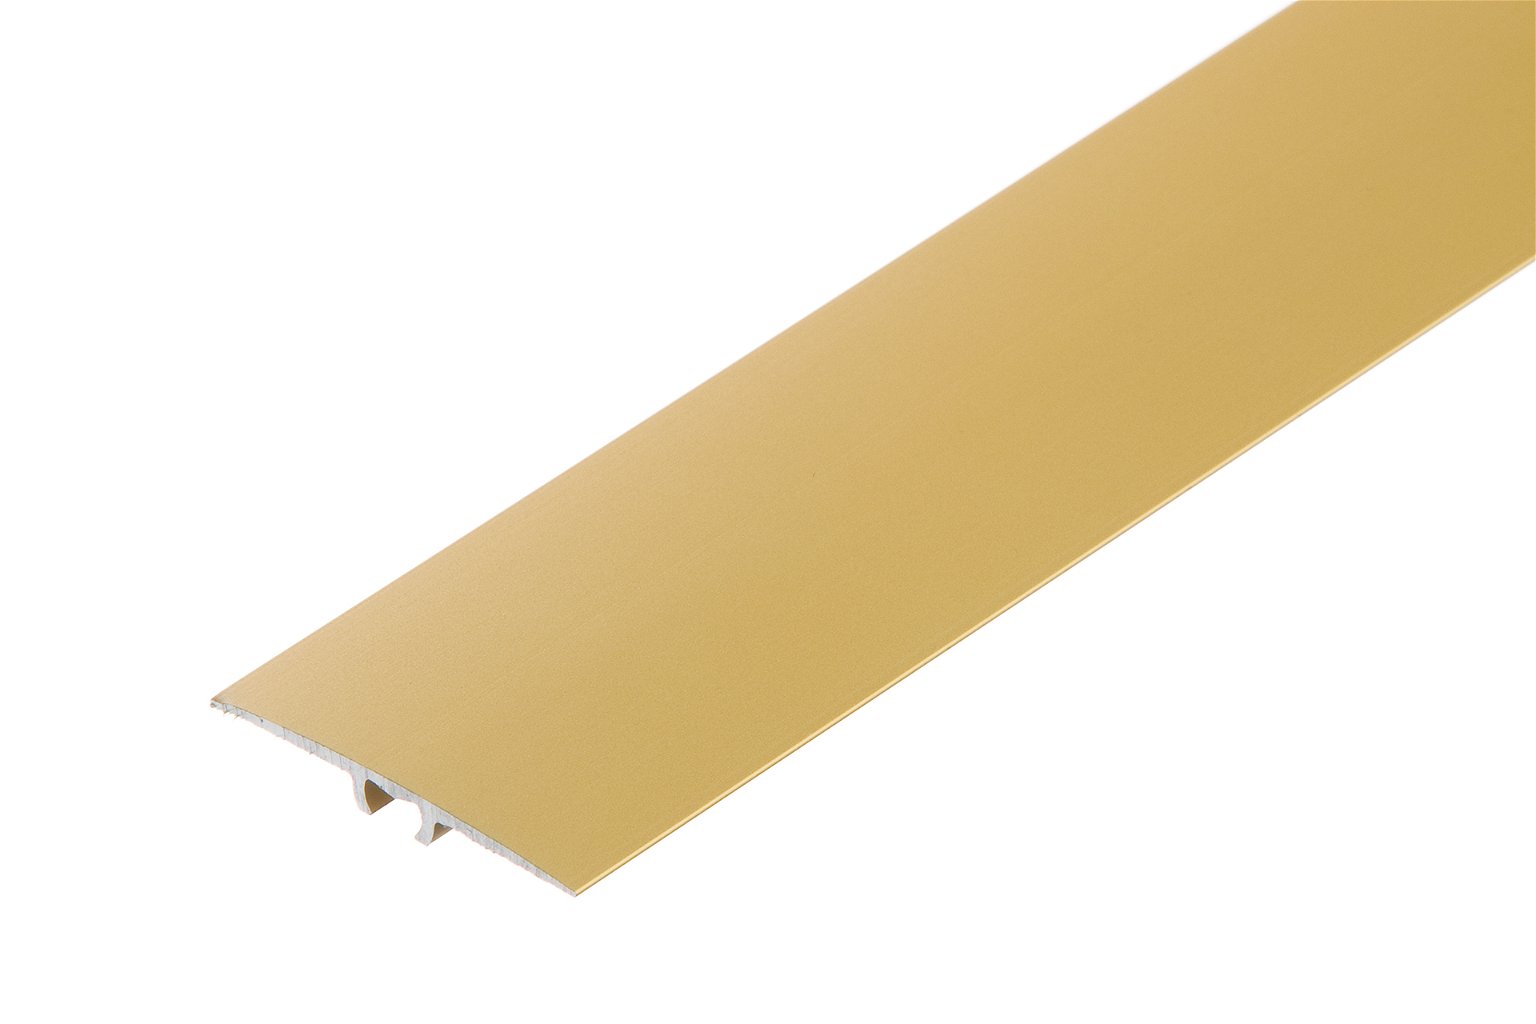 Aliuminė grindų juostelė C23, plokščia, auksinės spl., 35 mm pločio, 93 cm ilgio